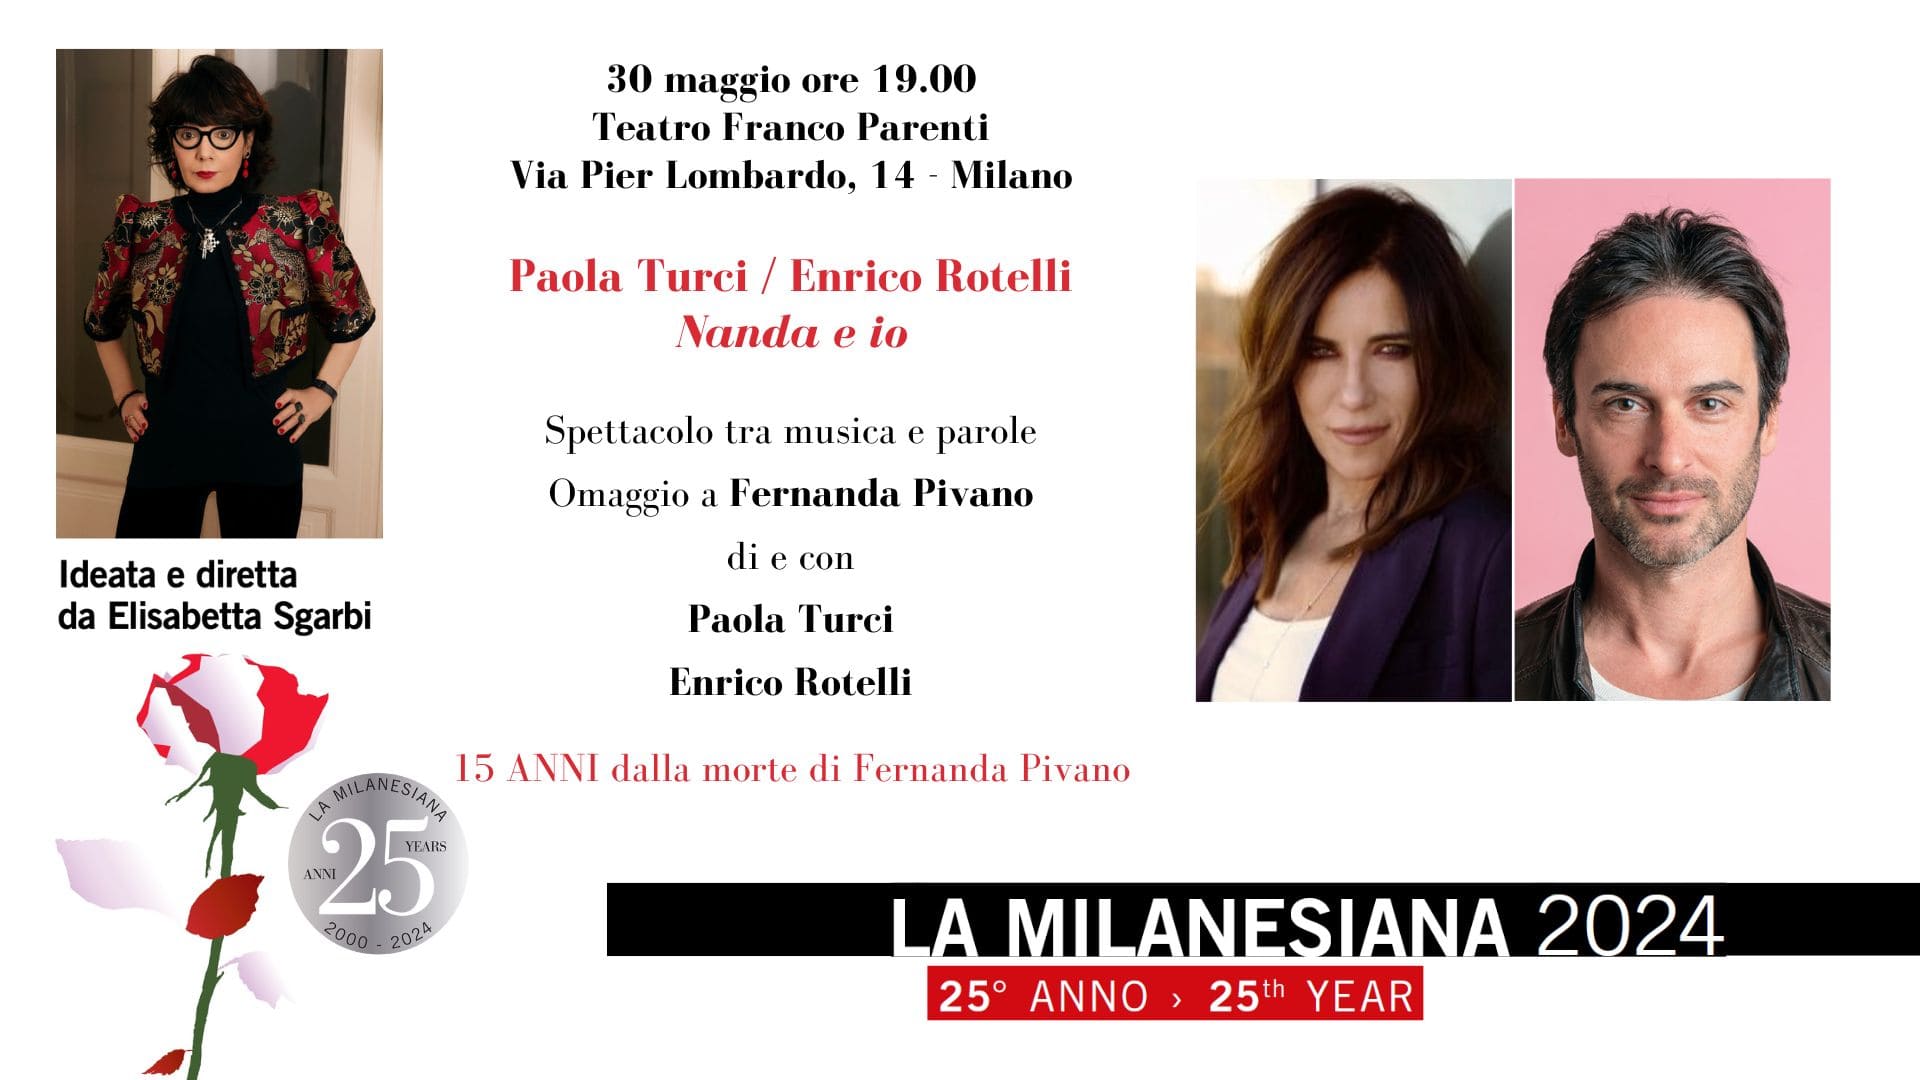 Il 30 maggio, La Milanesiana, di Elisabetta Sgarbi, ospita al Teatro Franco Parenti di Milano “Nanda E Io”, lo spettacolo di Paola Turci e Enrico Rotelli, dedicato a Fernanda Pivano.